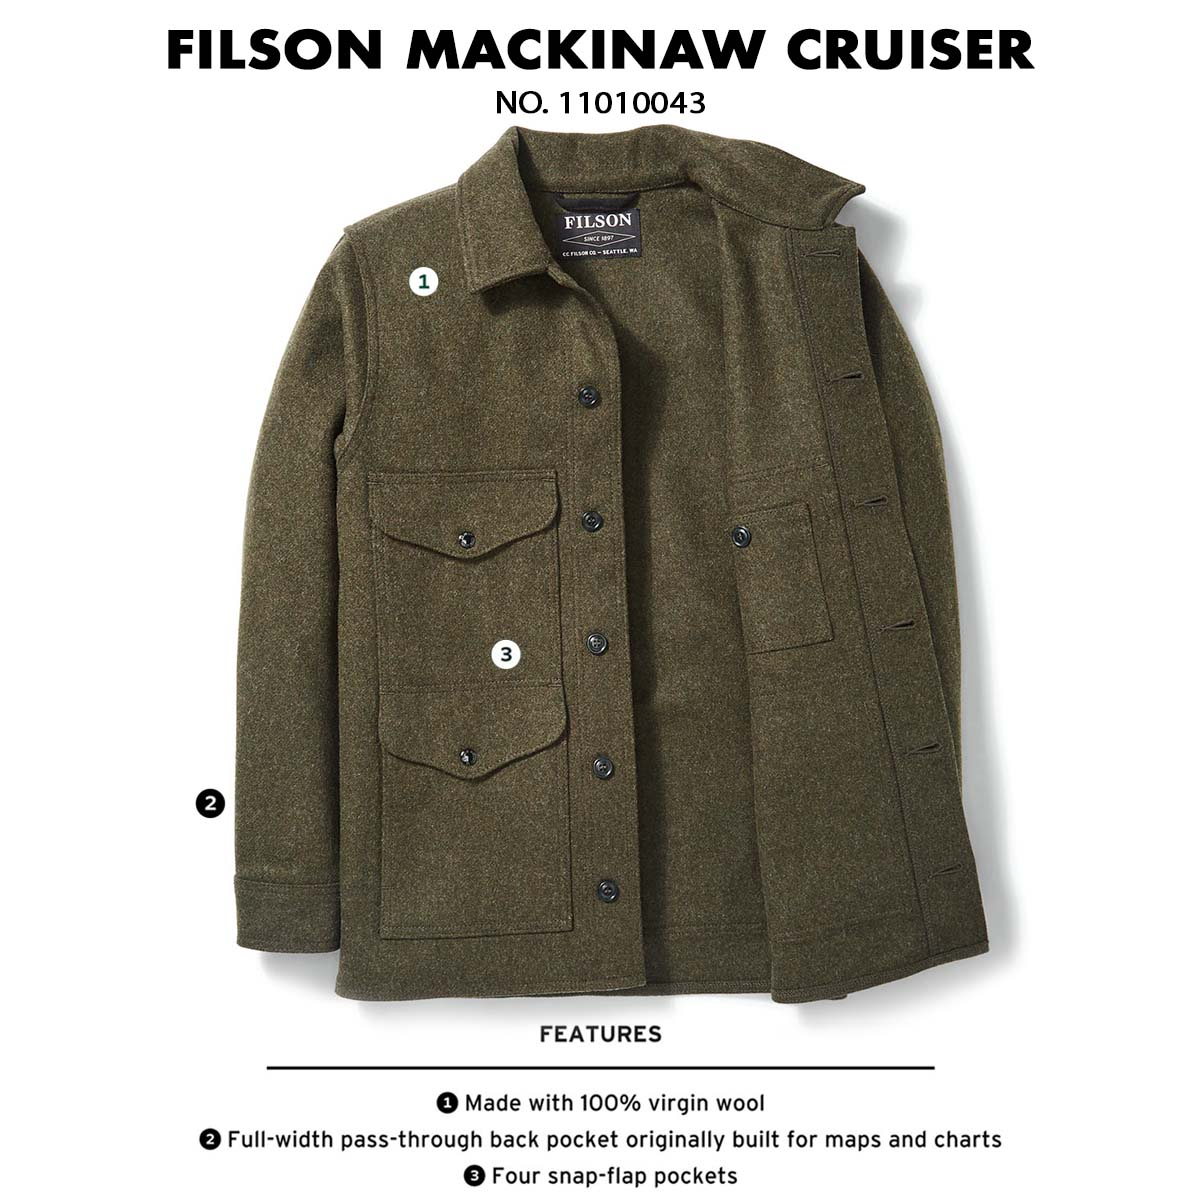 Filson Mackinaw Cruiser Forest Green 11010043, features